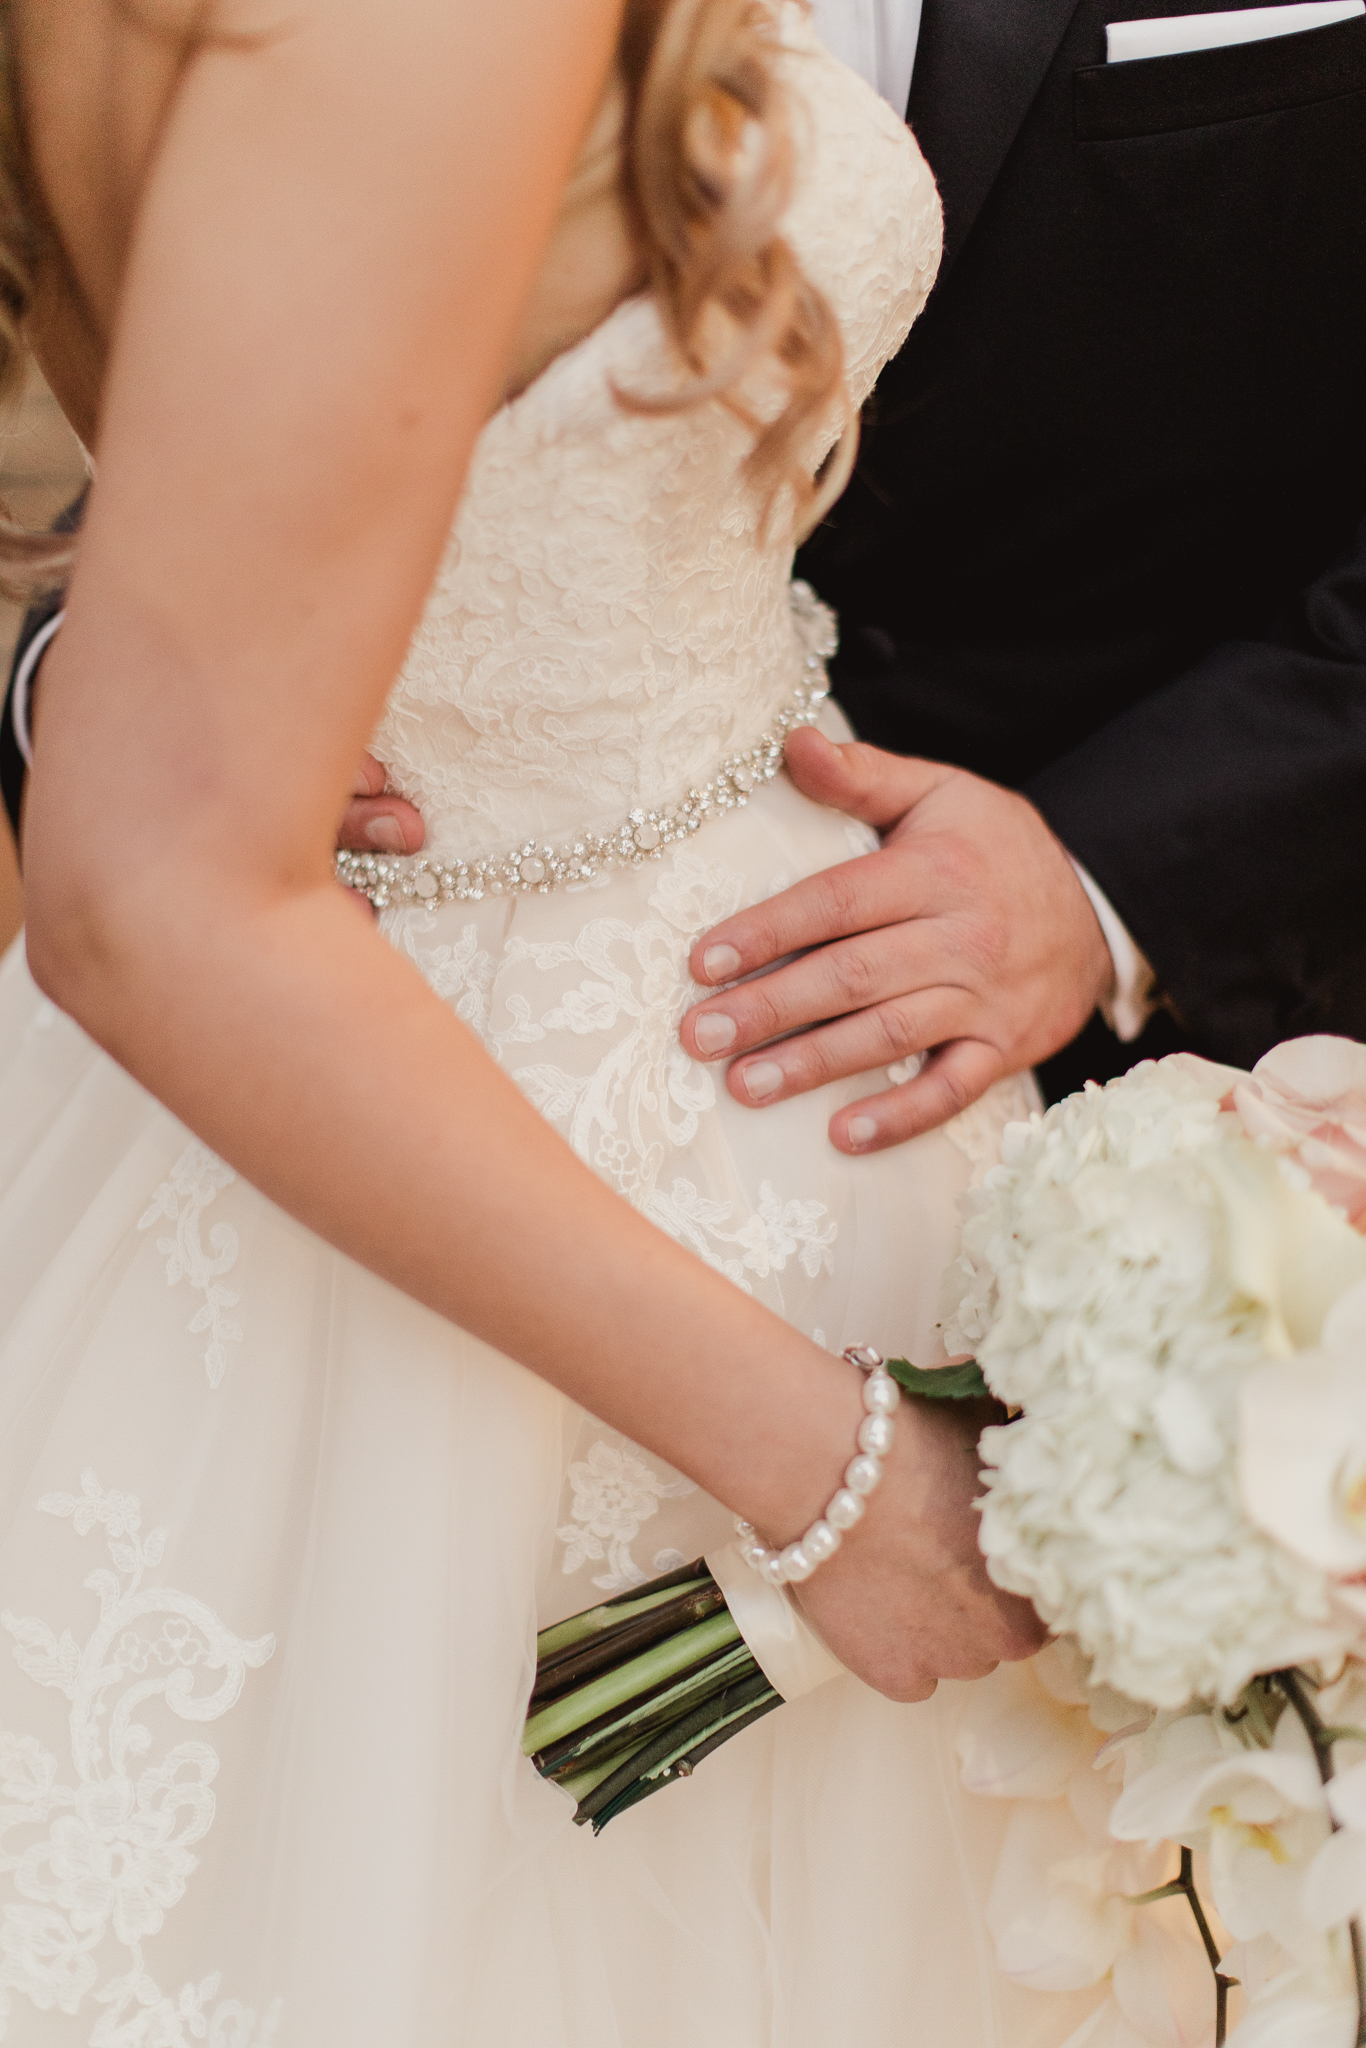 Dallas Adolphus Hotel Wedding: Odeta + Kevin | A Stylish Soiree, Dallas Wedding Planner